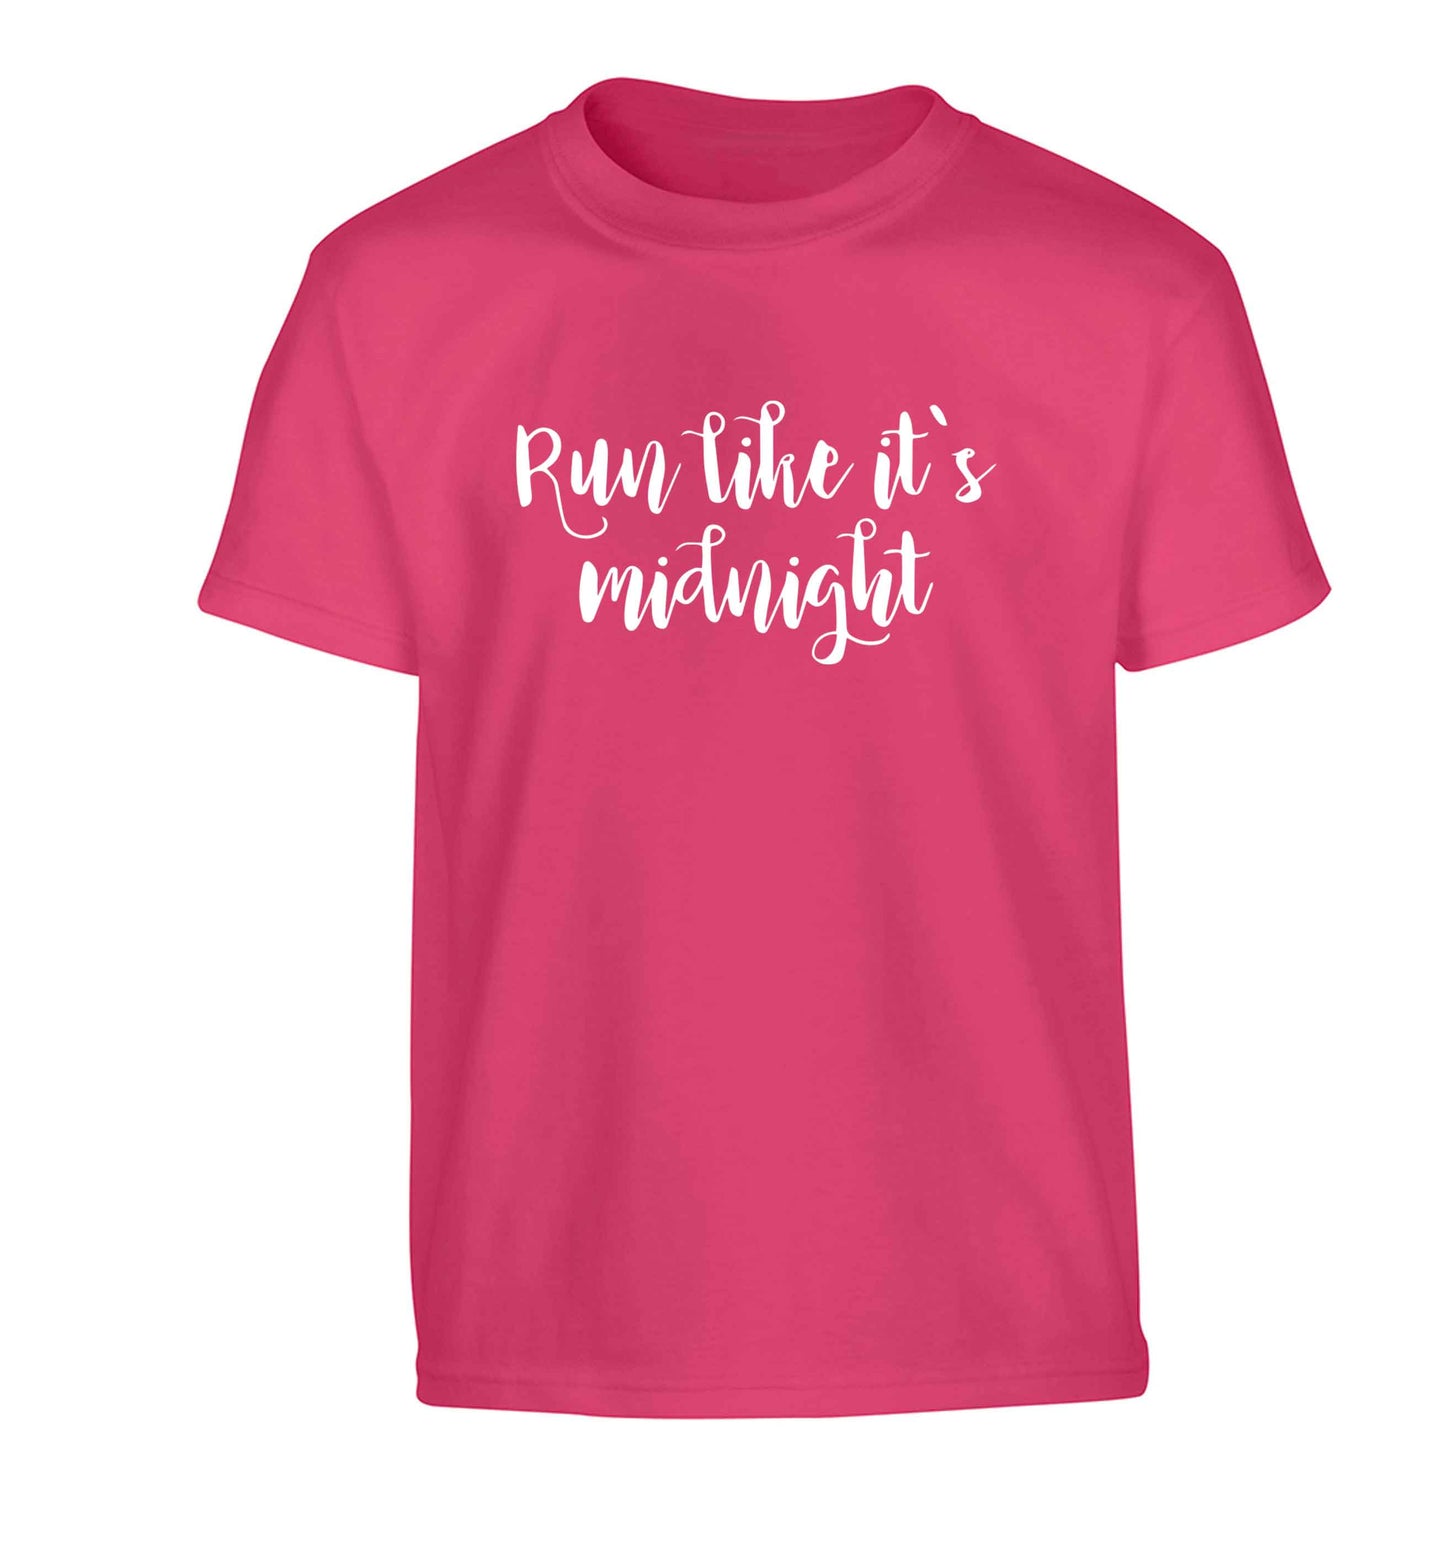 Run like it's midnight Children's pink Tshirt 12-13 Years